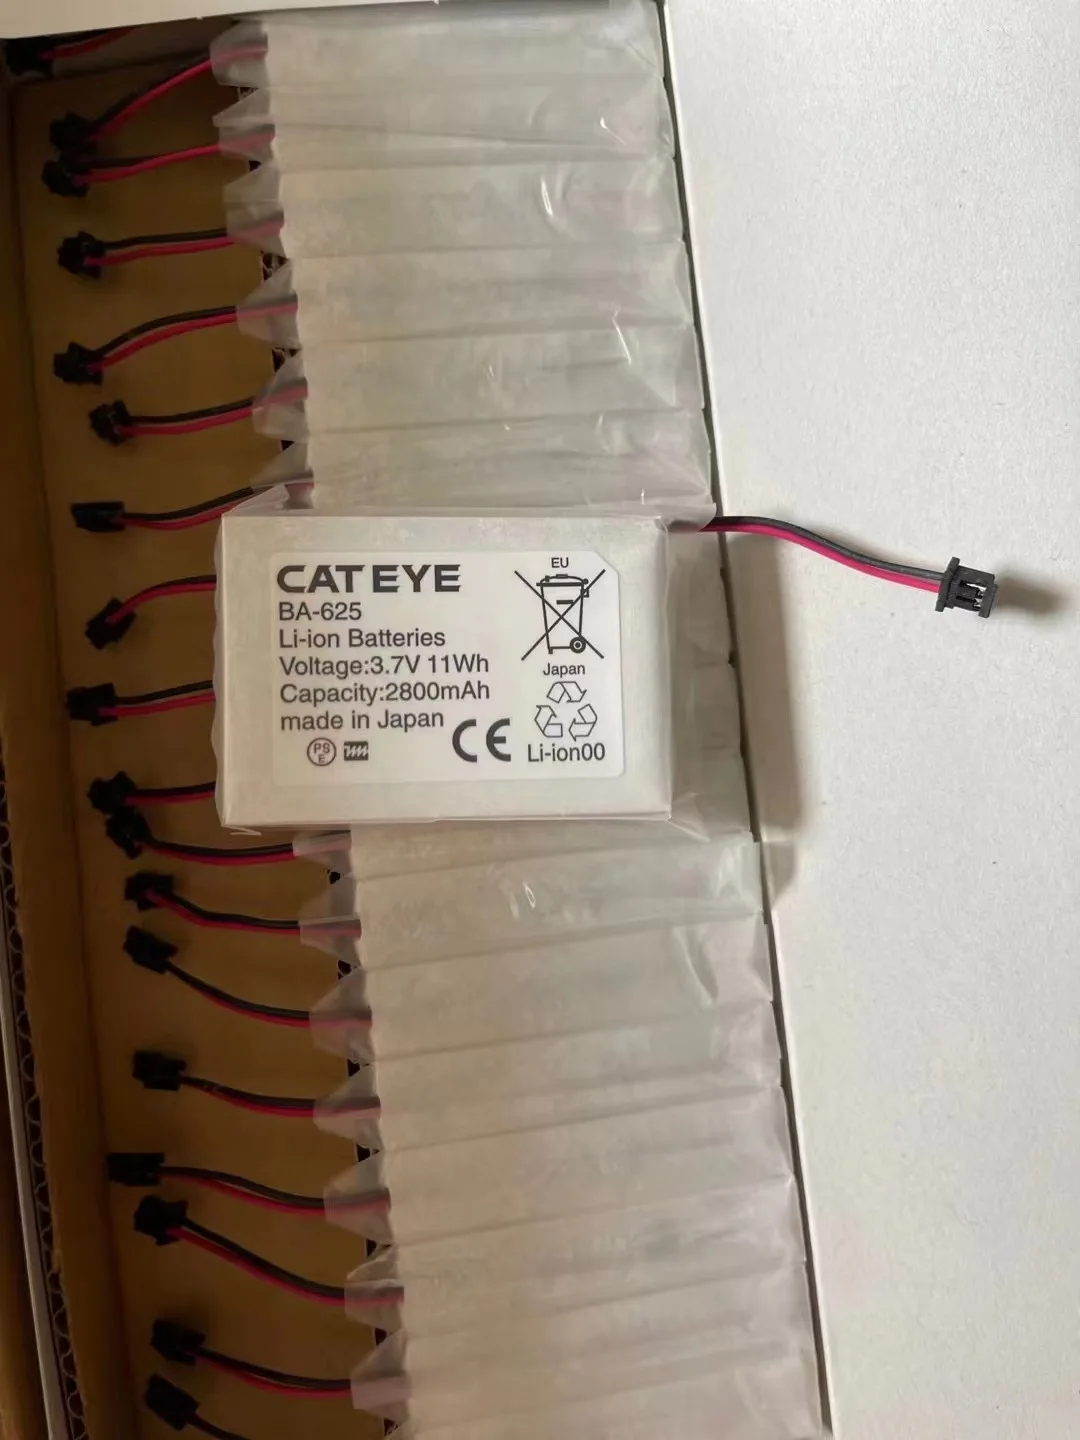 for CAT EYE BA-625 battery